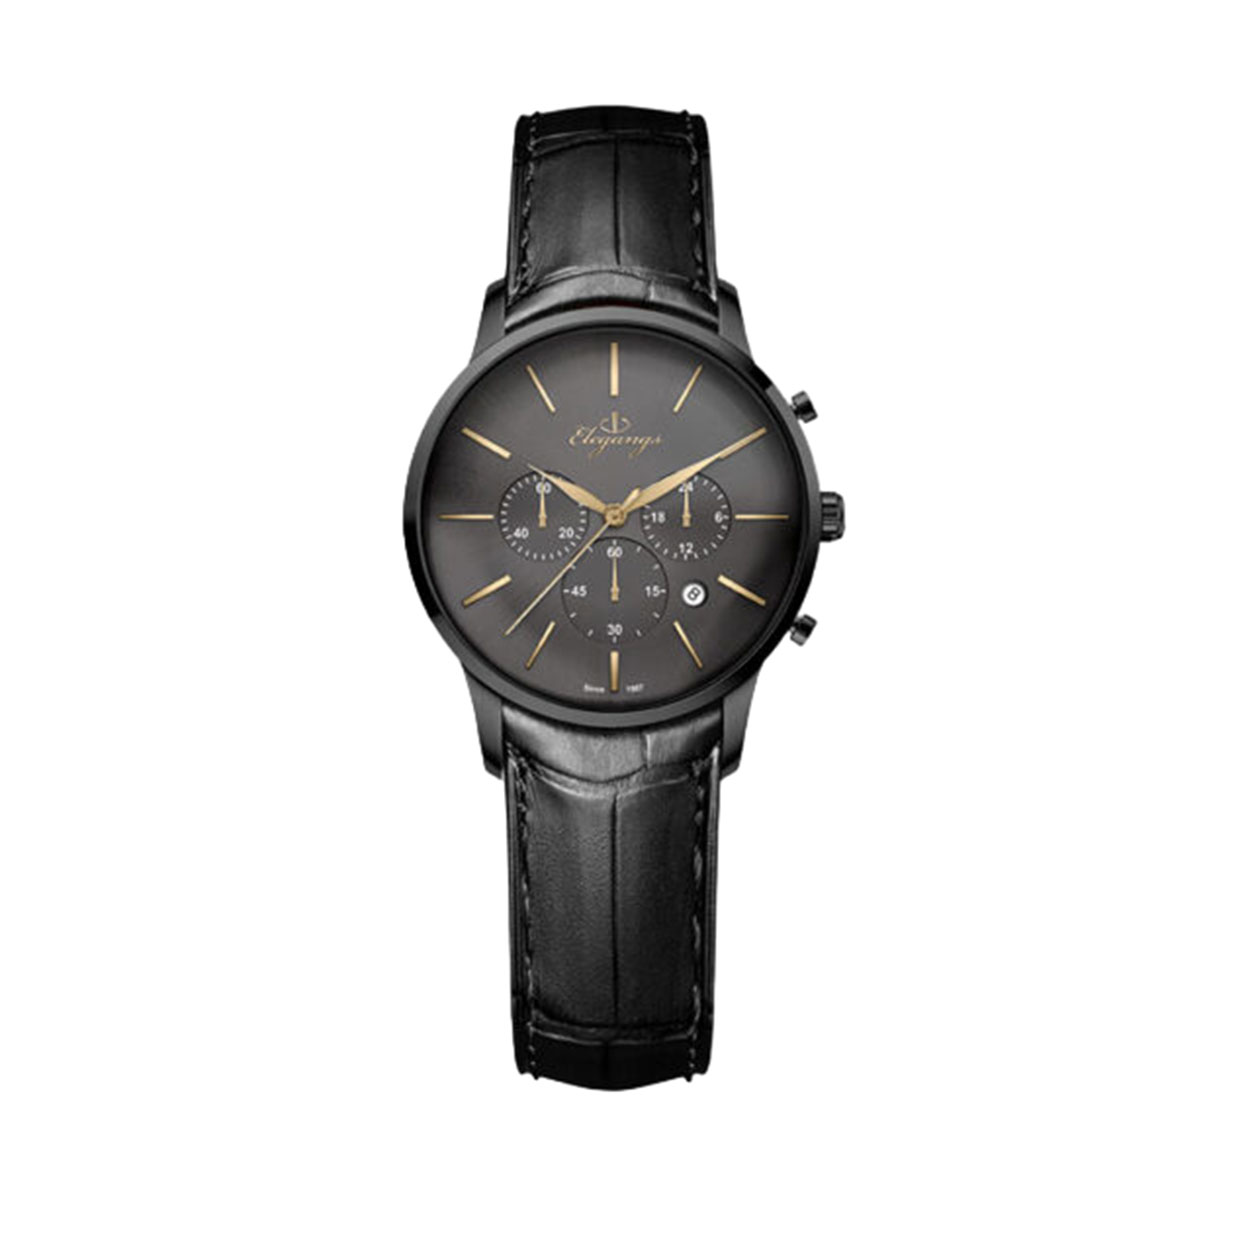 ساعت الگنگس مدل SC8145-606G (J) زنانه